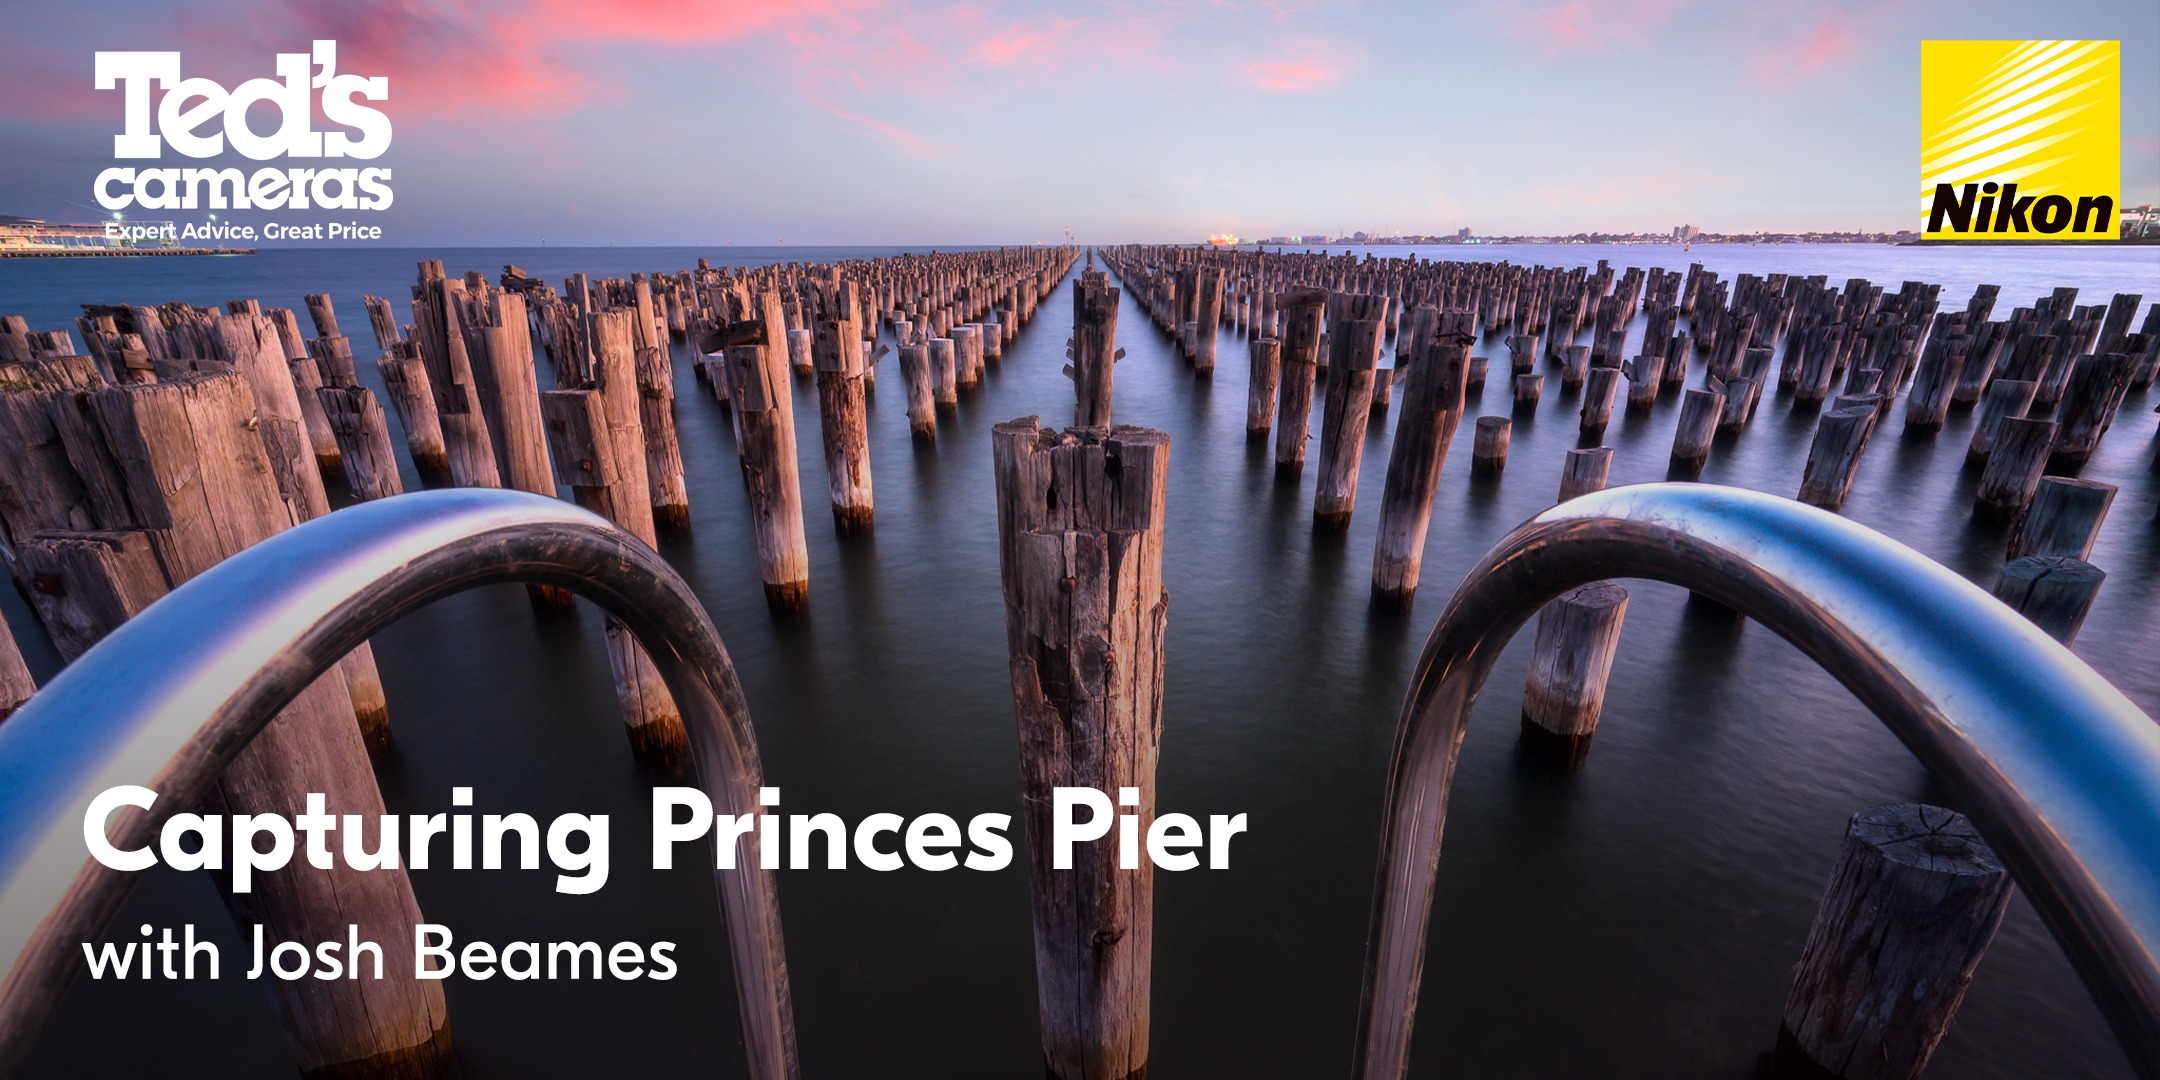 Capturing Princes Pier with Nikon